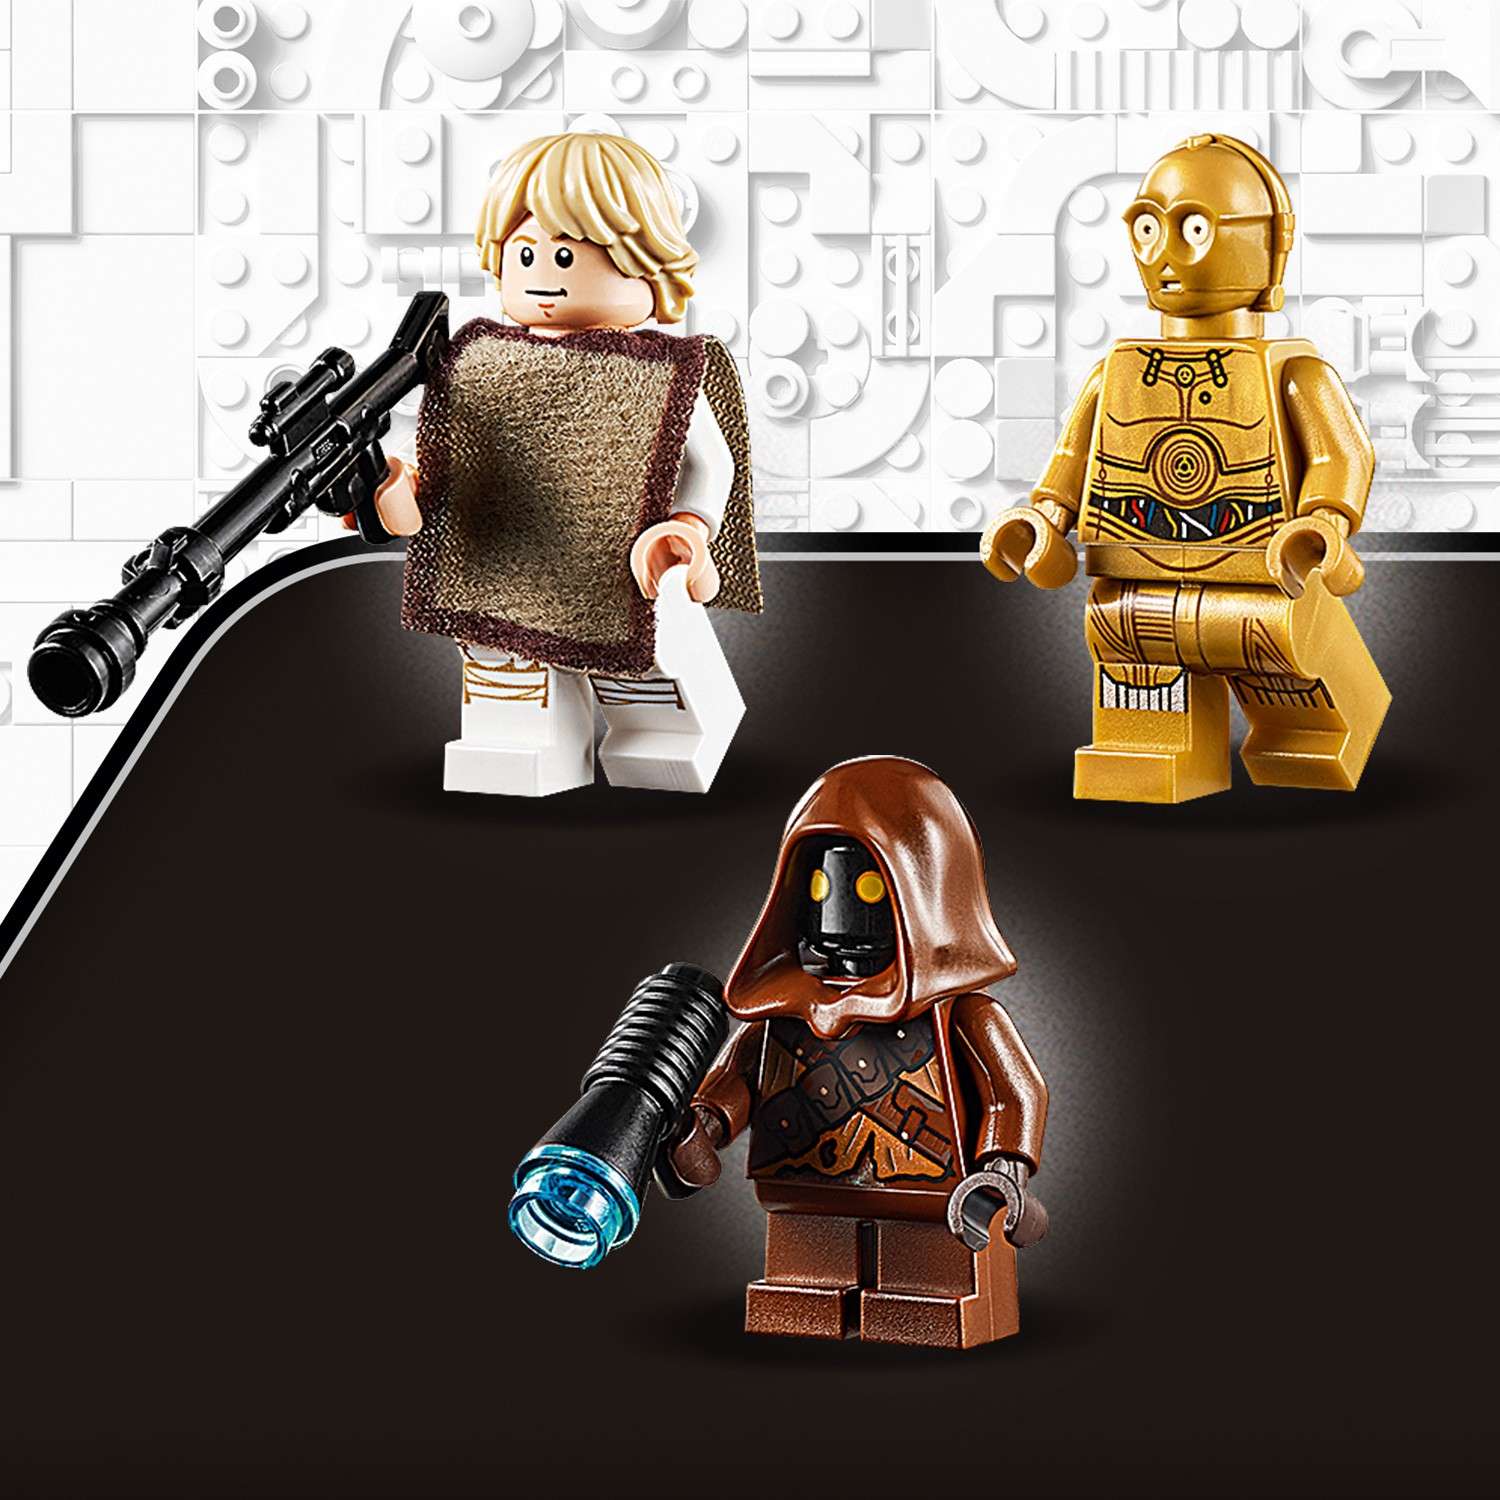 Конструктор LEGO Star Wars Спидер Люка Сайуокера 75271 - фото 13